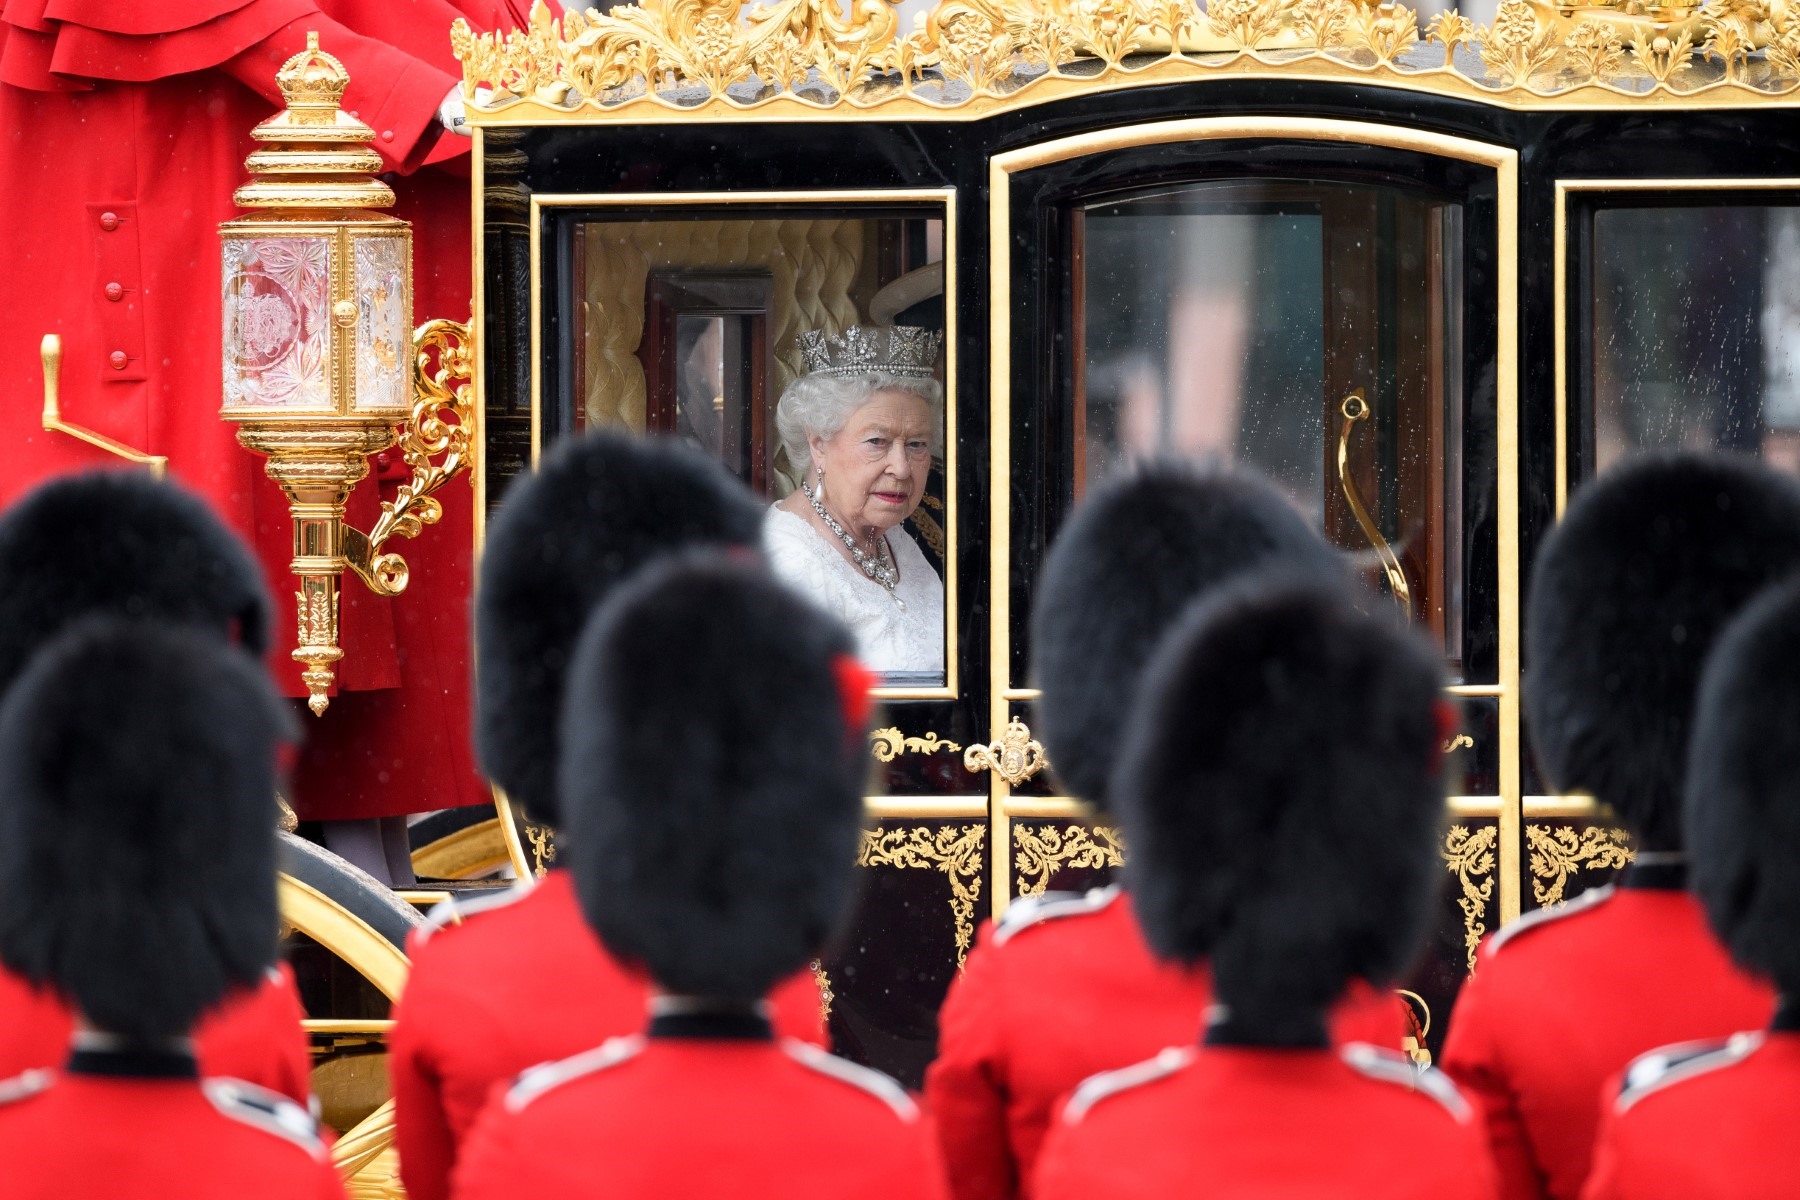 Chuỗi sự kiện sau cái chết của Nữ hoàng Anh có mật danh là “Chiến dịch Cầu London“. Ảnh: AFP